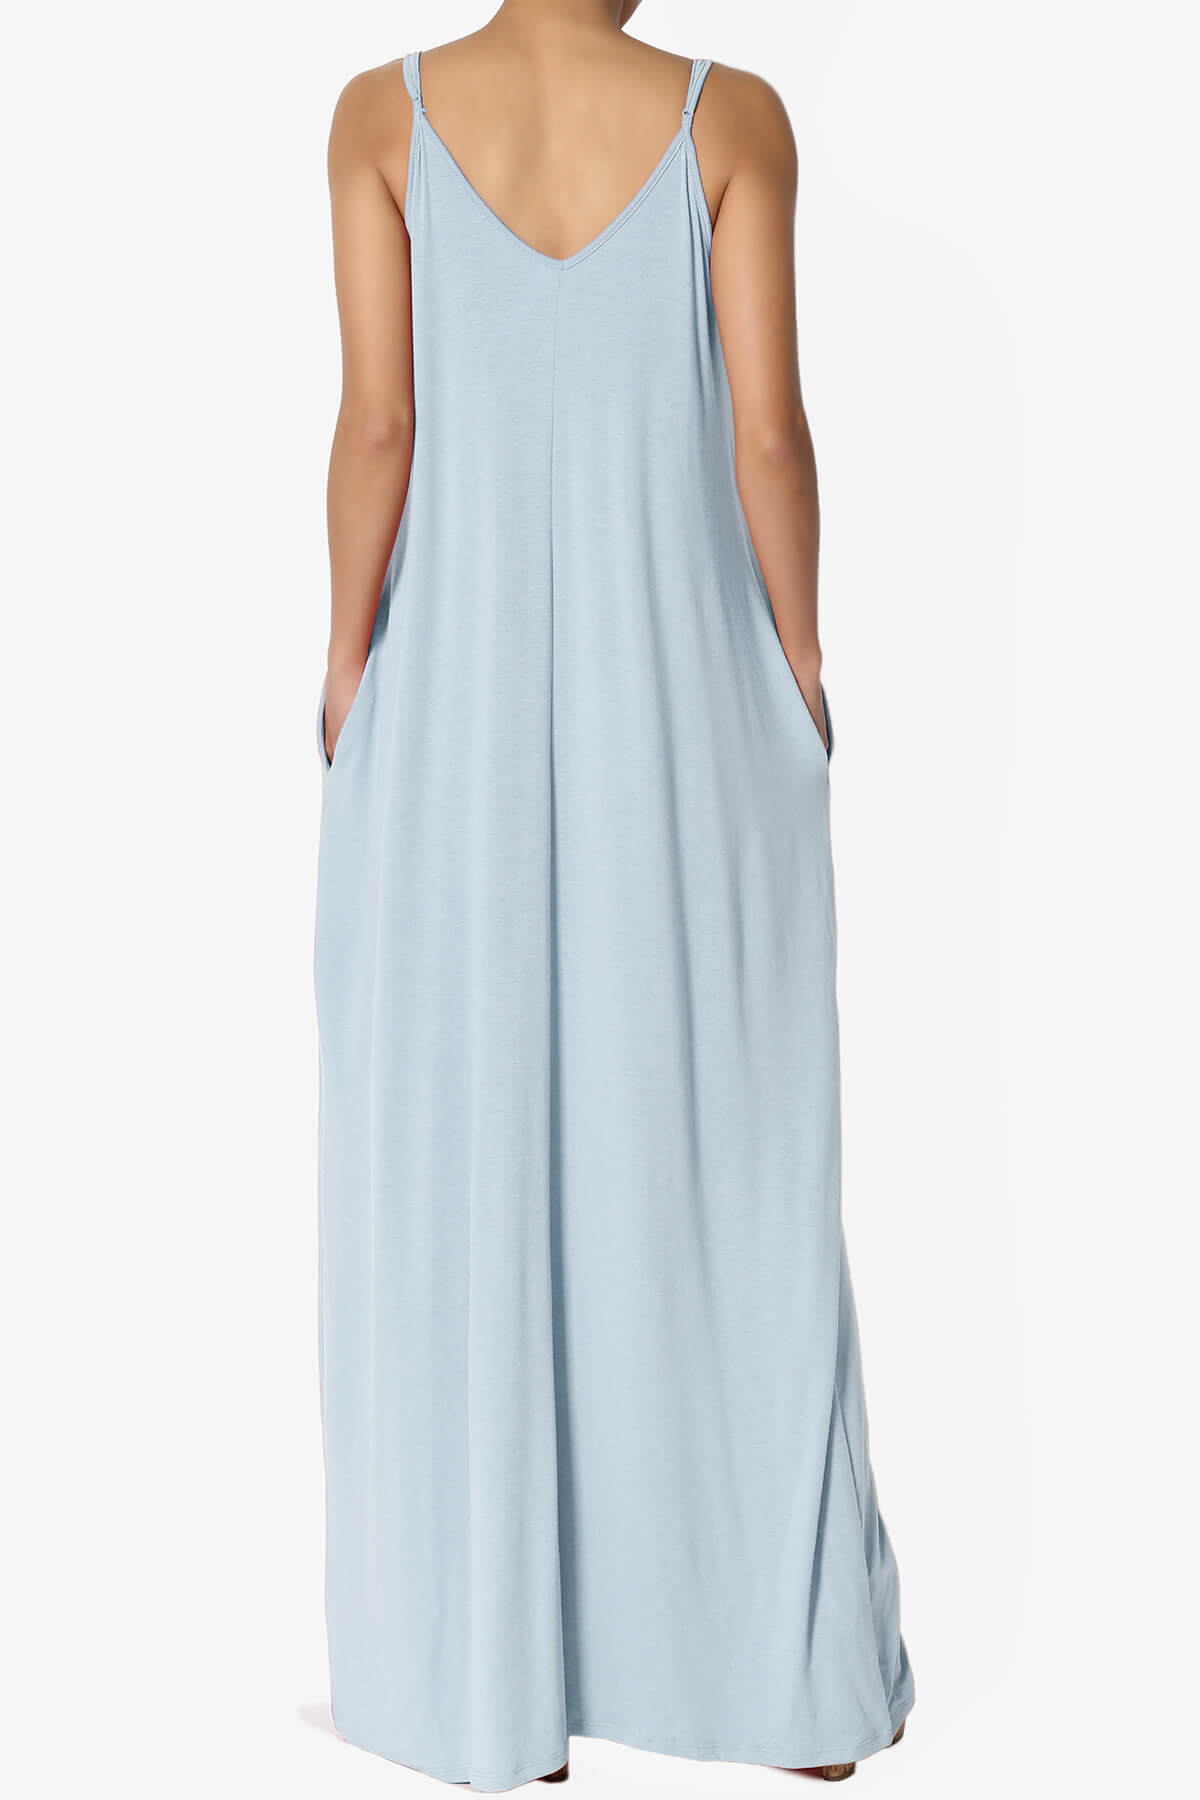 Venus Pocket Cami Maxi Dress ASH BLUE_2